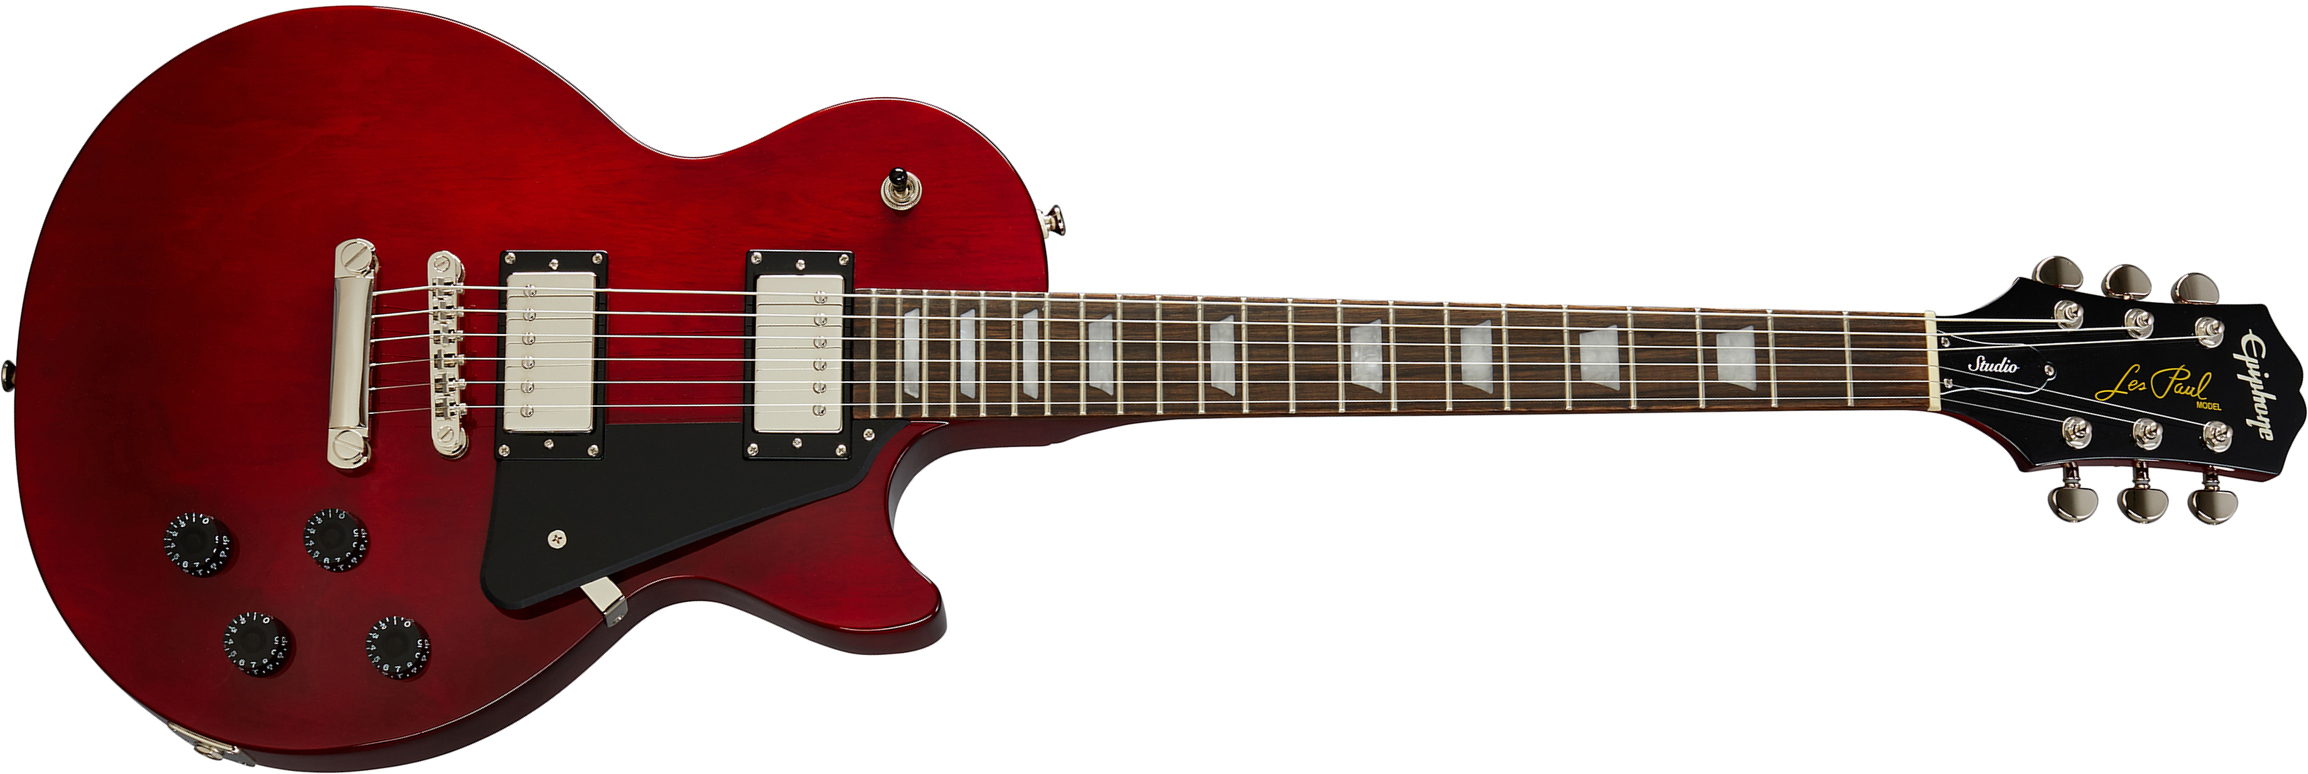 Epiphone Les Paul Studio 2h Ht Pf - Wine Red - Enkel gesneden elektrische gitaar - Main picture